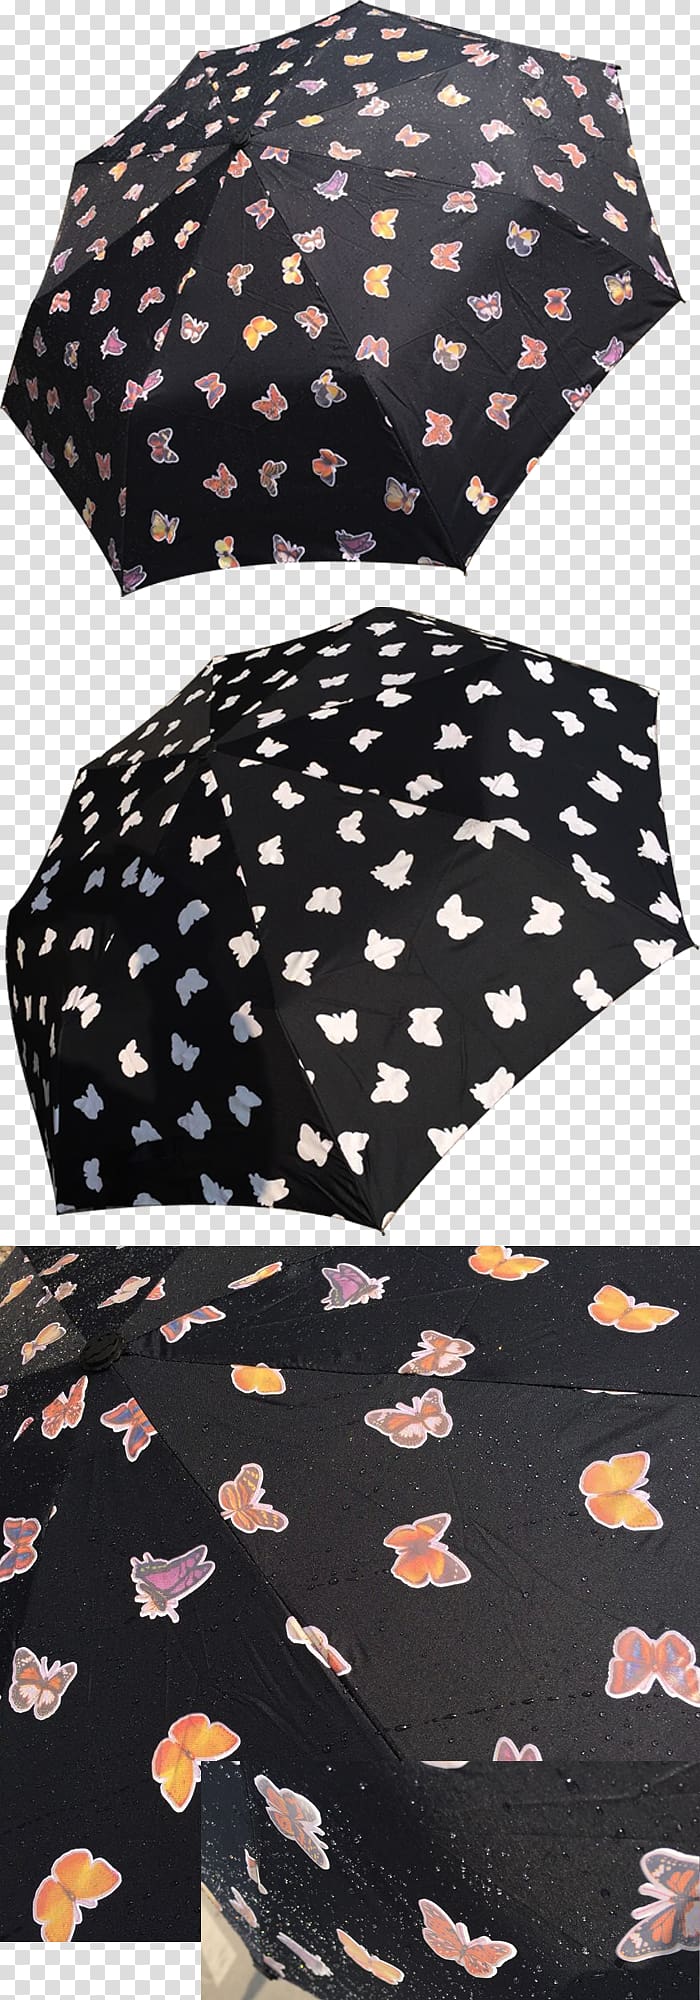 Polka dot Umbrella Xiamen Brown, umbrella transparent background PNG clipart